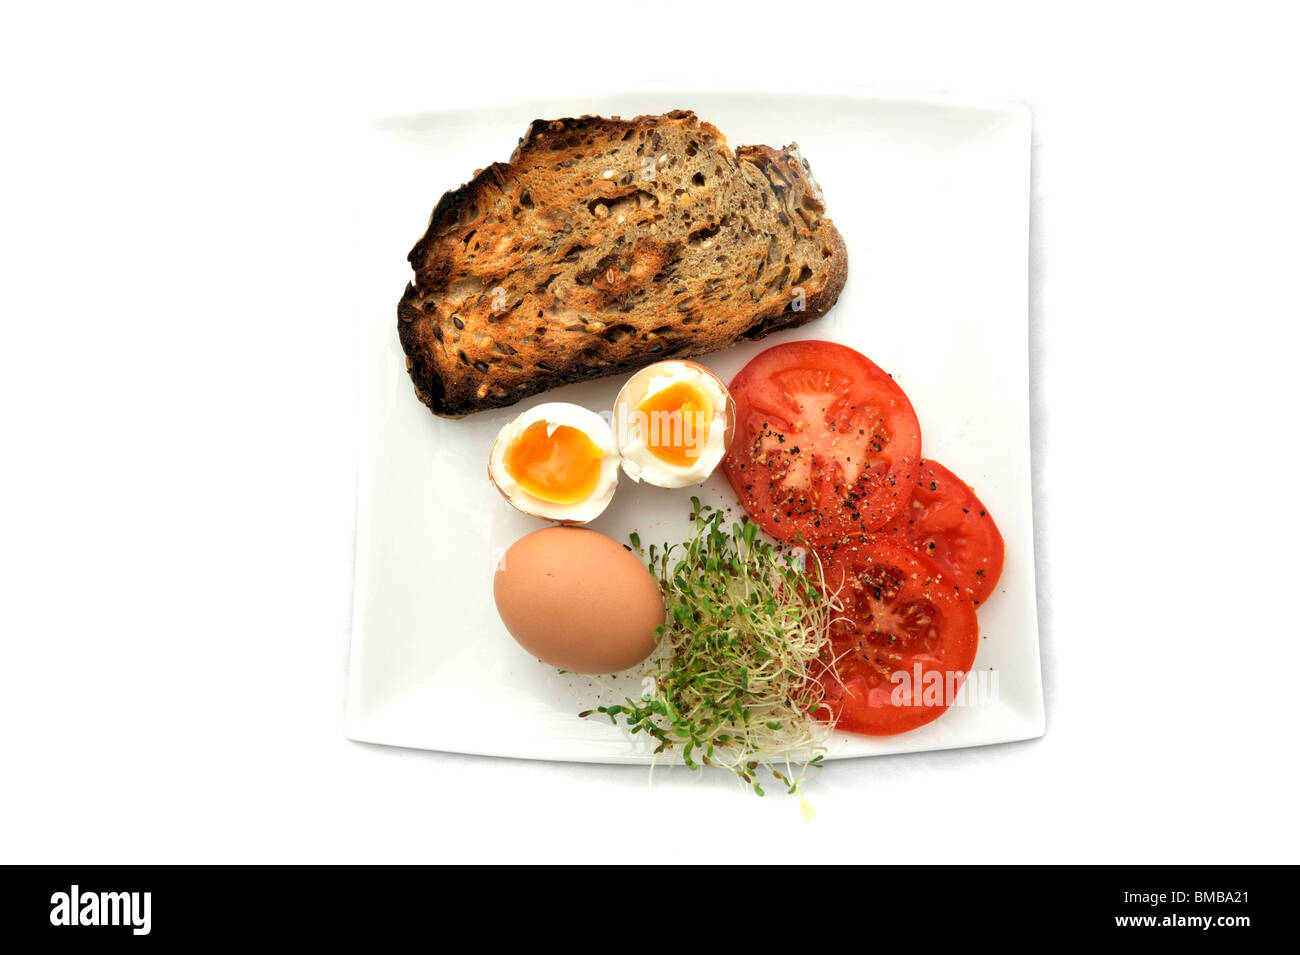 Un saludable desayuno bajo en grasa compuesta de huevos, pan, alfafa integrales soughdough coles y tomates Foto de stock